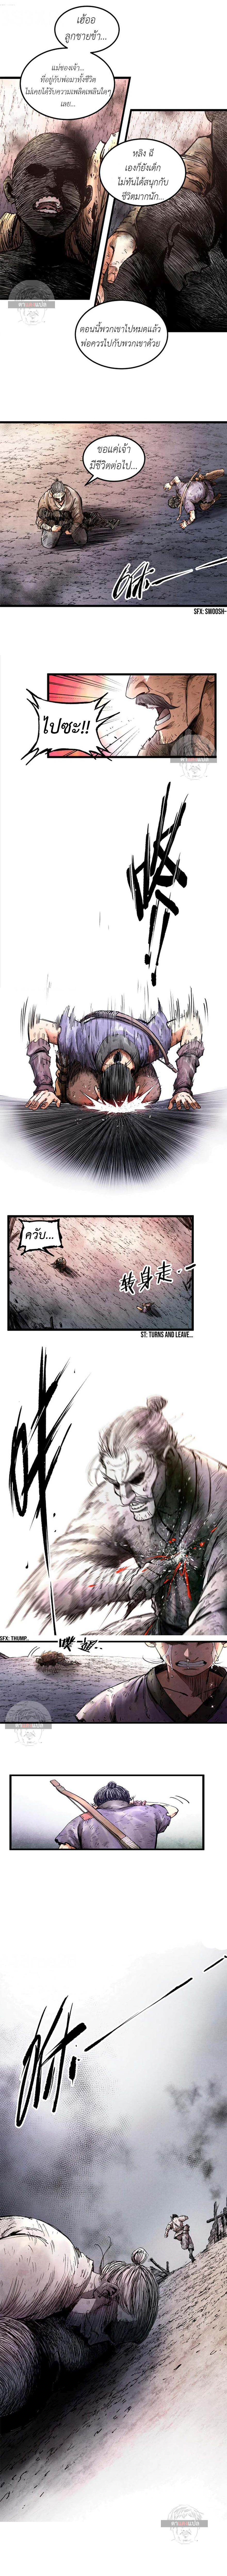 Lu Bu’s life story 6 (10)